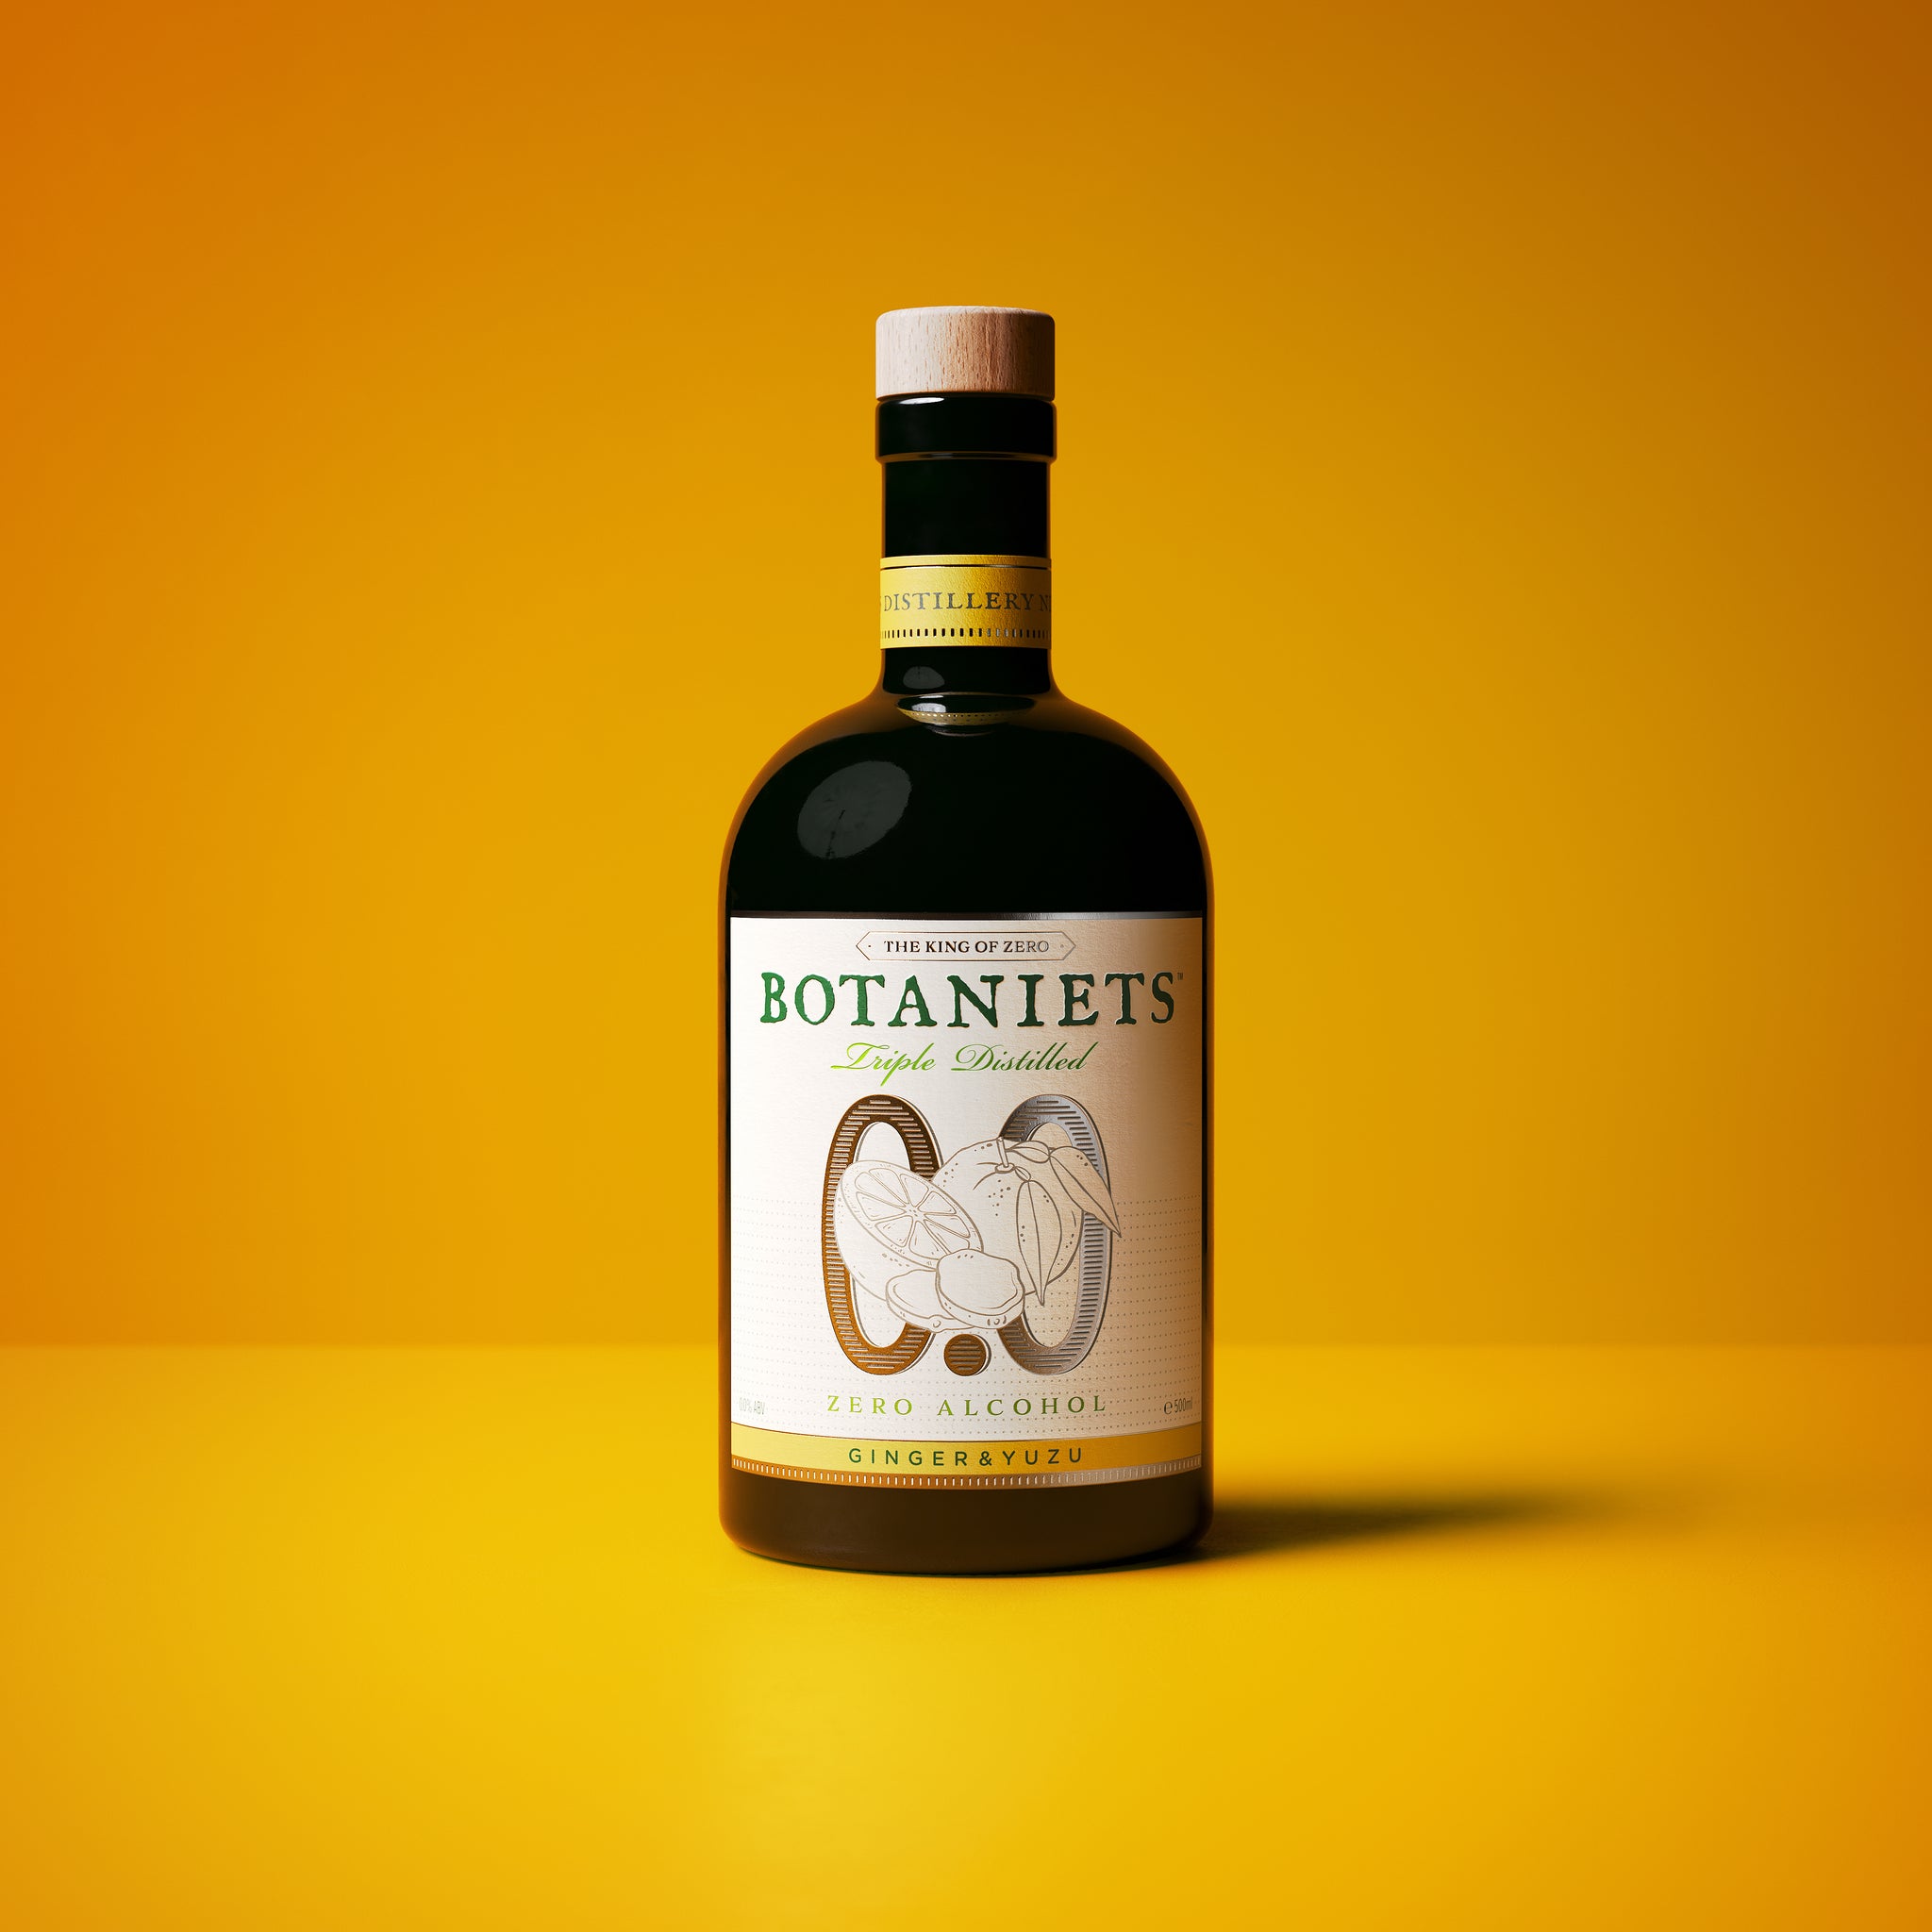 Botaniets Ginger & Yuzu, Triple Distilled Spirit 0.0%